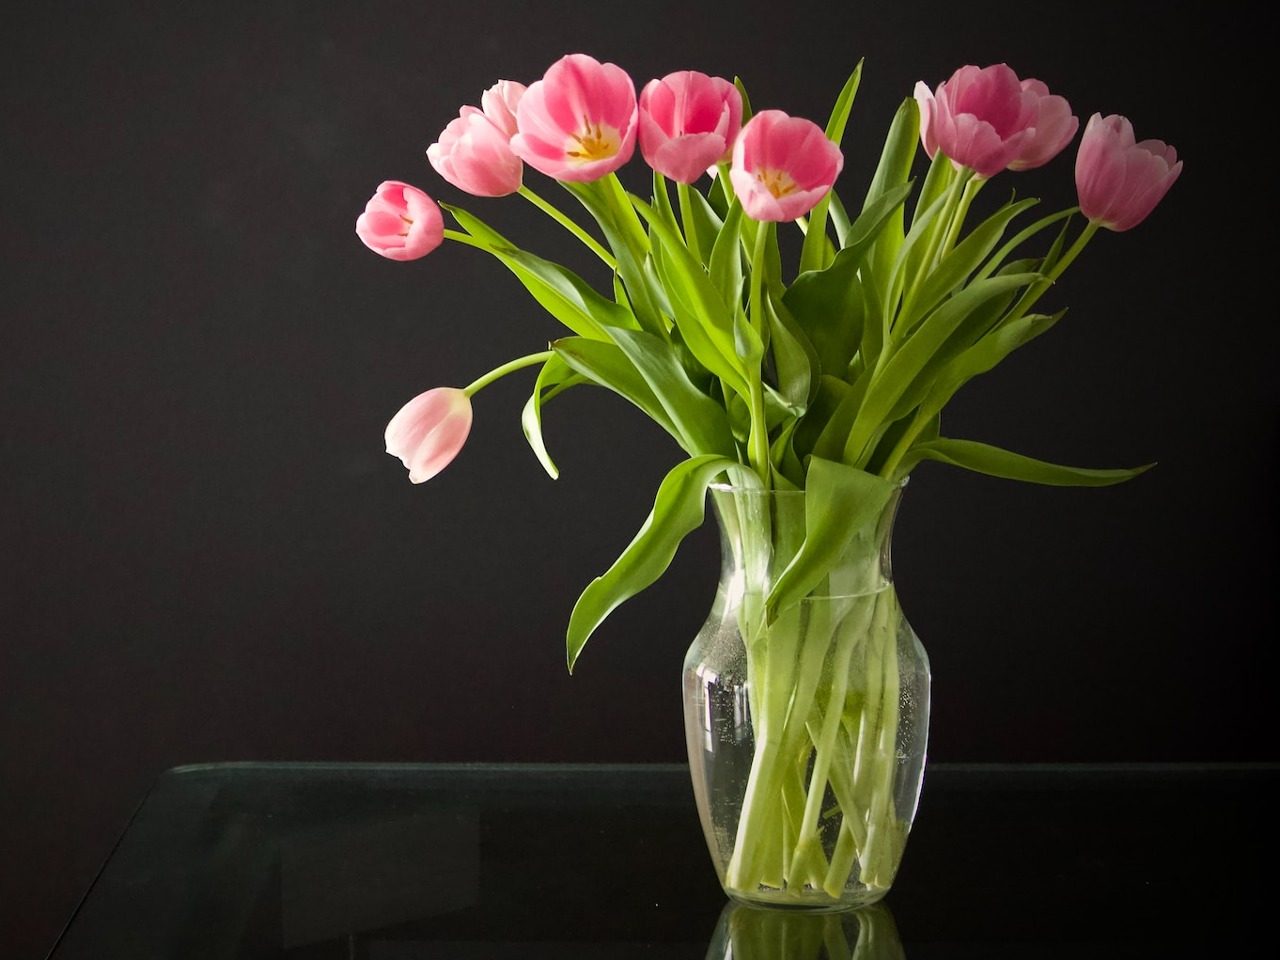 Photo d'un bouquet de fleurs coupées (tulipes) dans un vase rempli d'eau